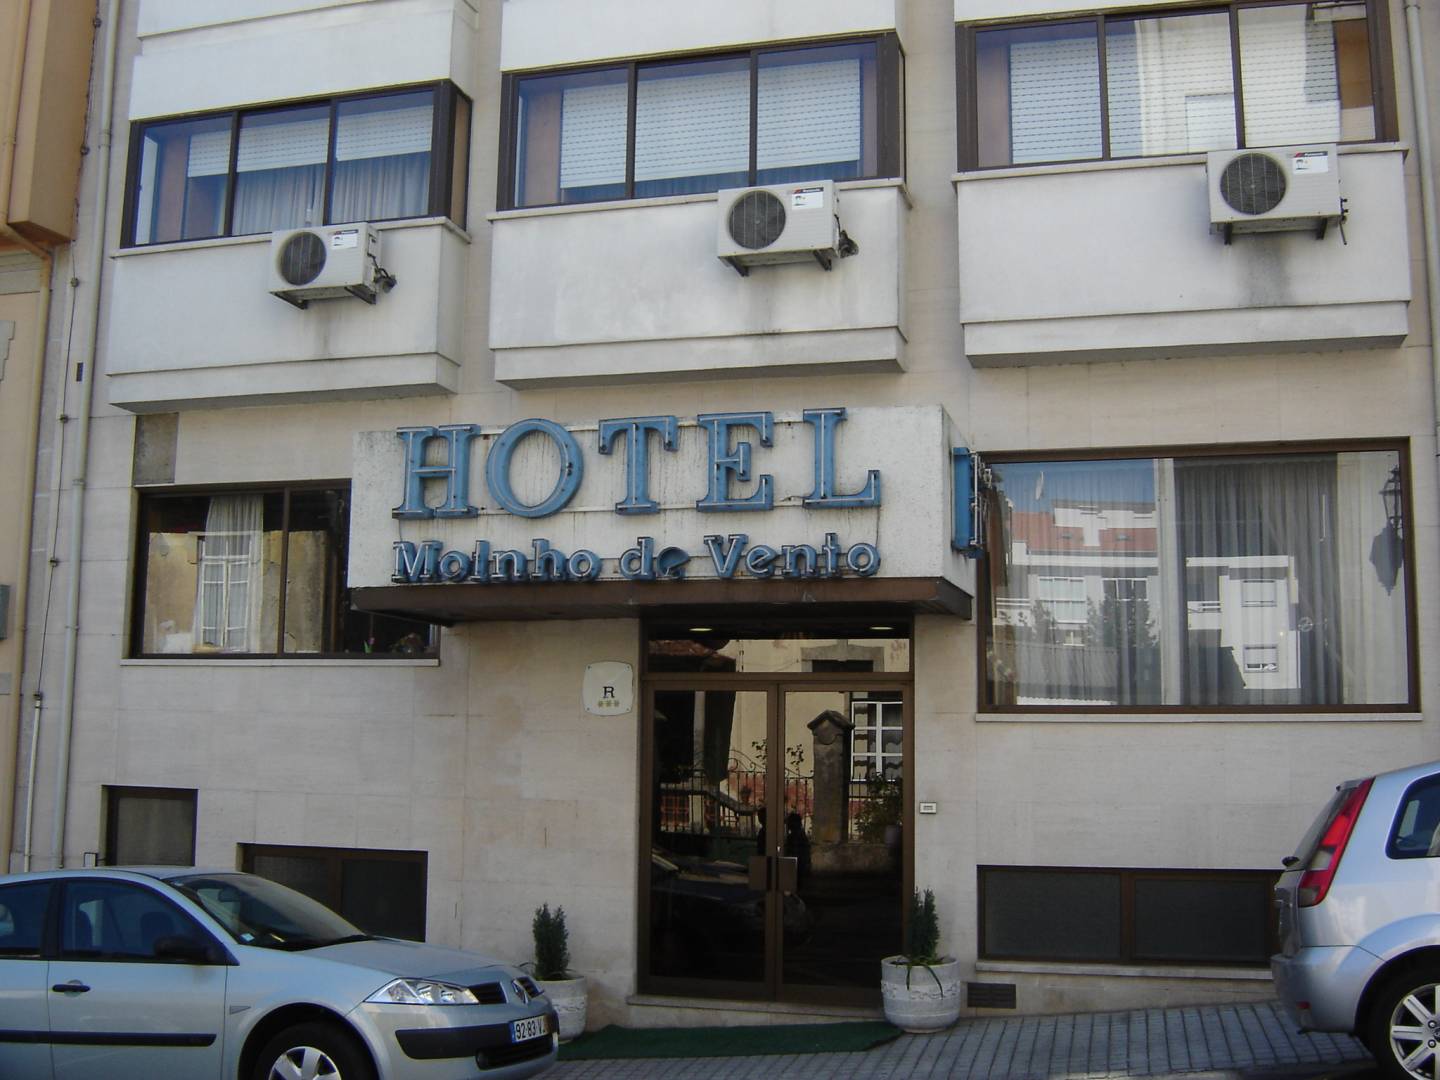 HOTEL MOINHO DE VENTO VISEU 3* (Portugal) - de € 33